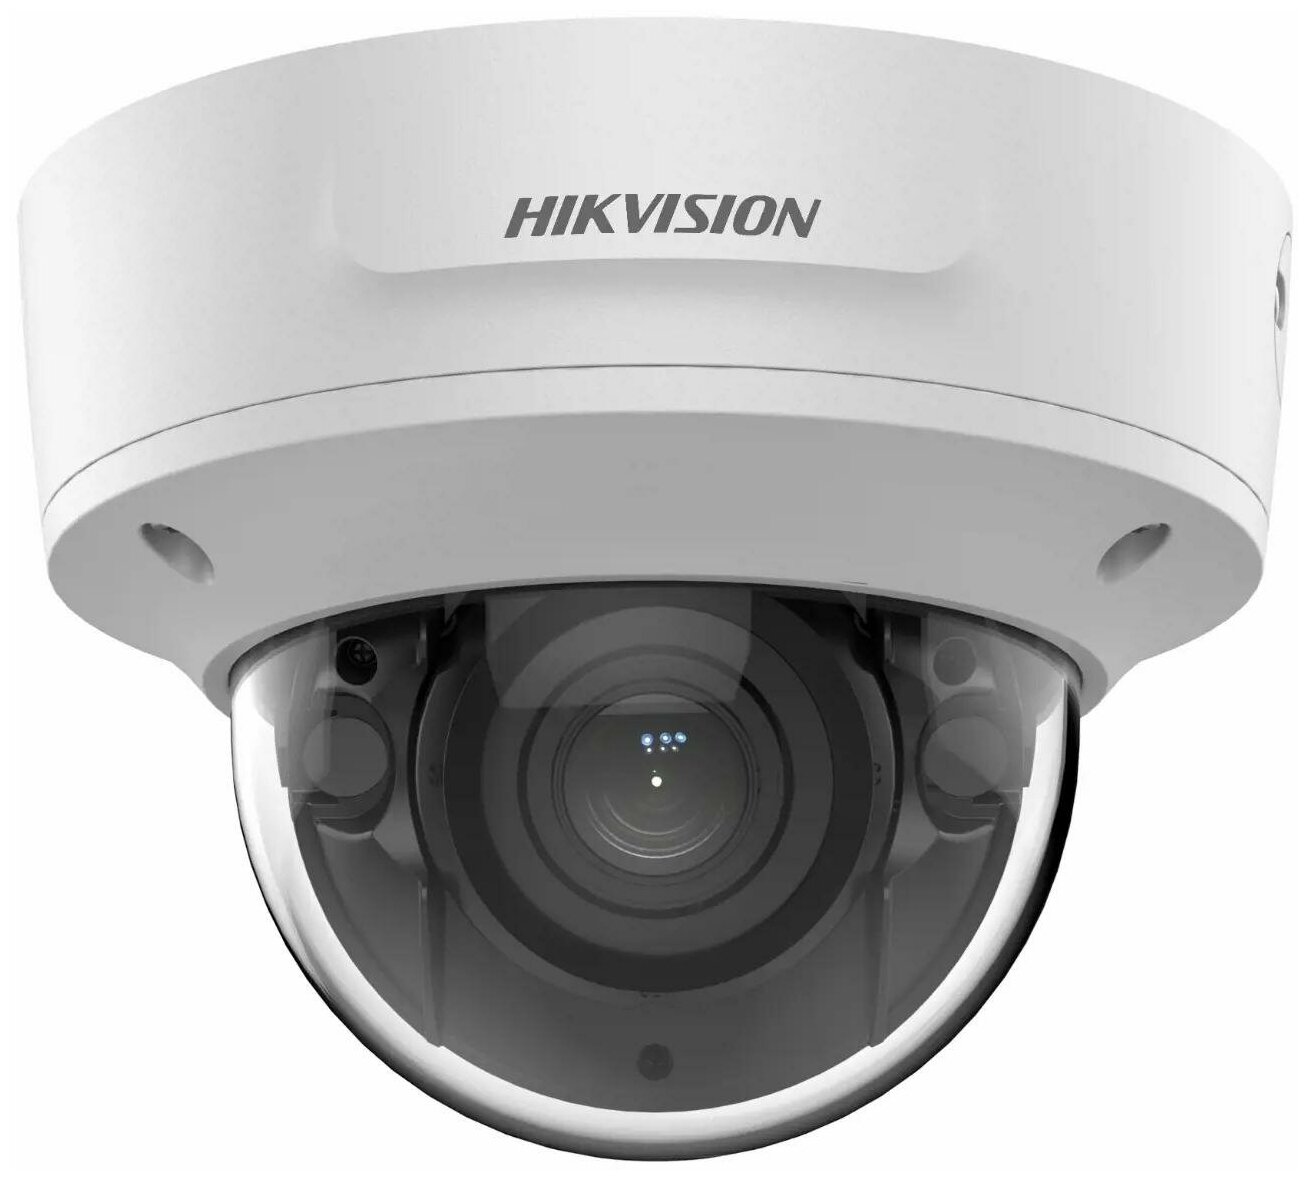 Видеокамера IP HIKVISION DS-2CD2743G2-IZS 4Мп уличная купольная с EXIR-подсветкой до 40м и технологией AcuSense; моторизированный вариообъектив 2.8-12